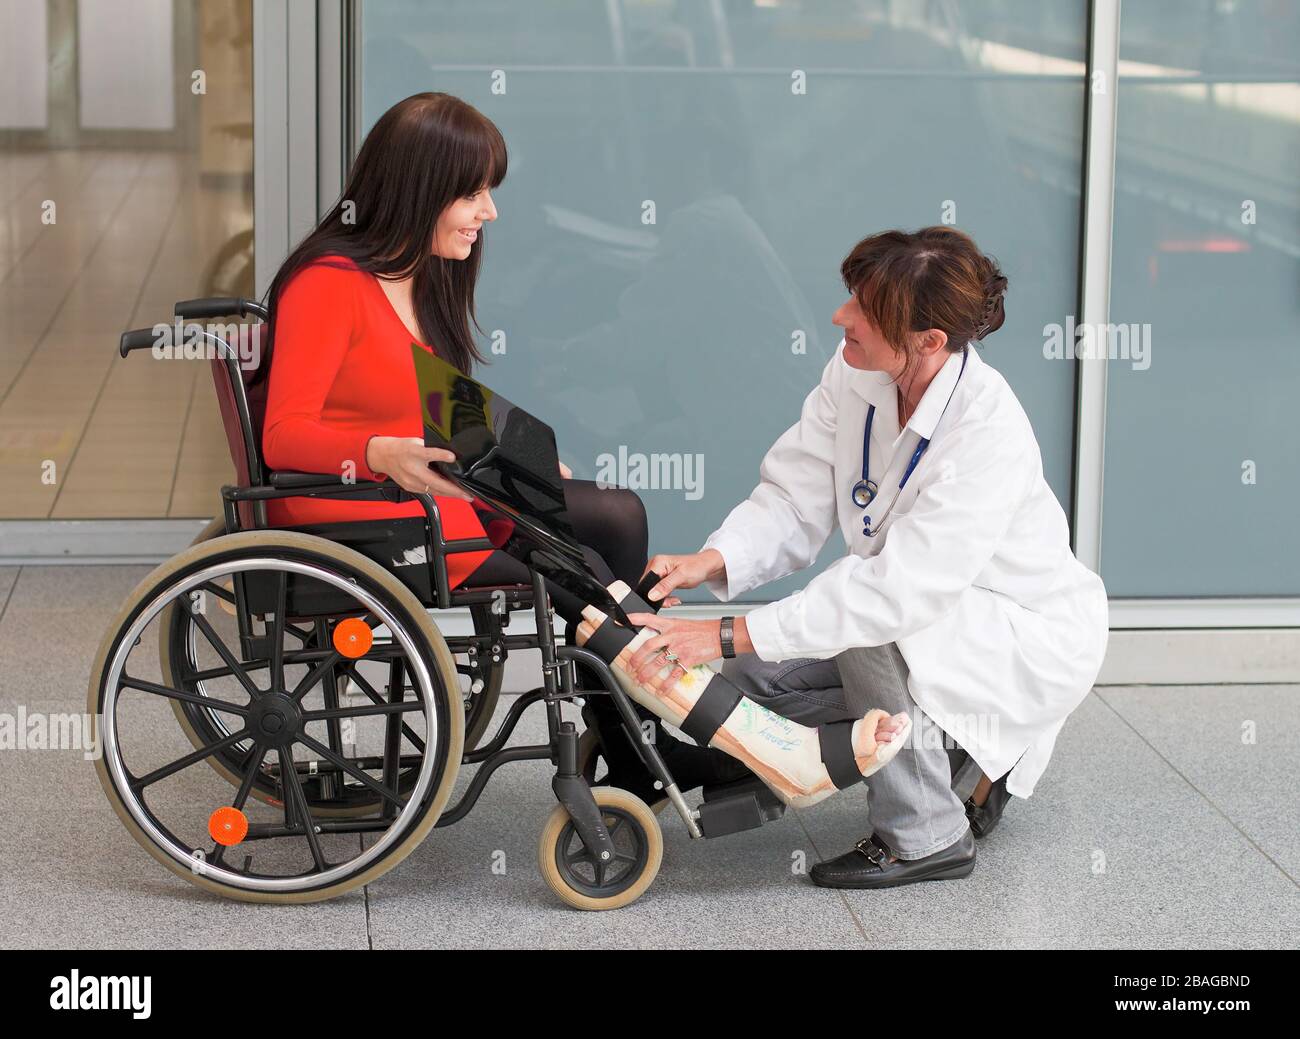 Junge Frau mit Gipsbein sitzt im Rollstuhl, MR: Si, Aerztin versorgt. sie, Foto Stock